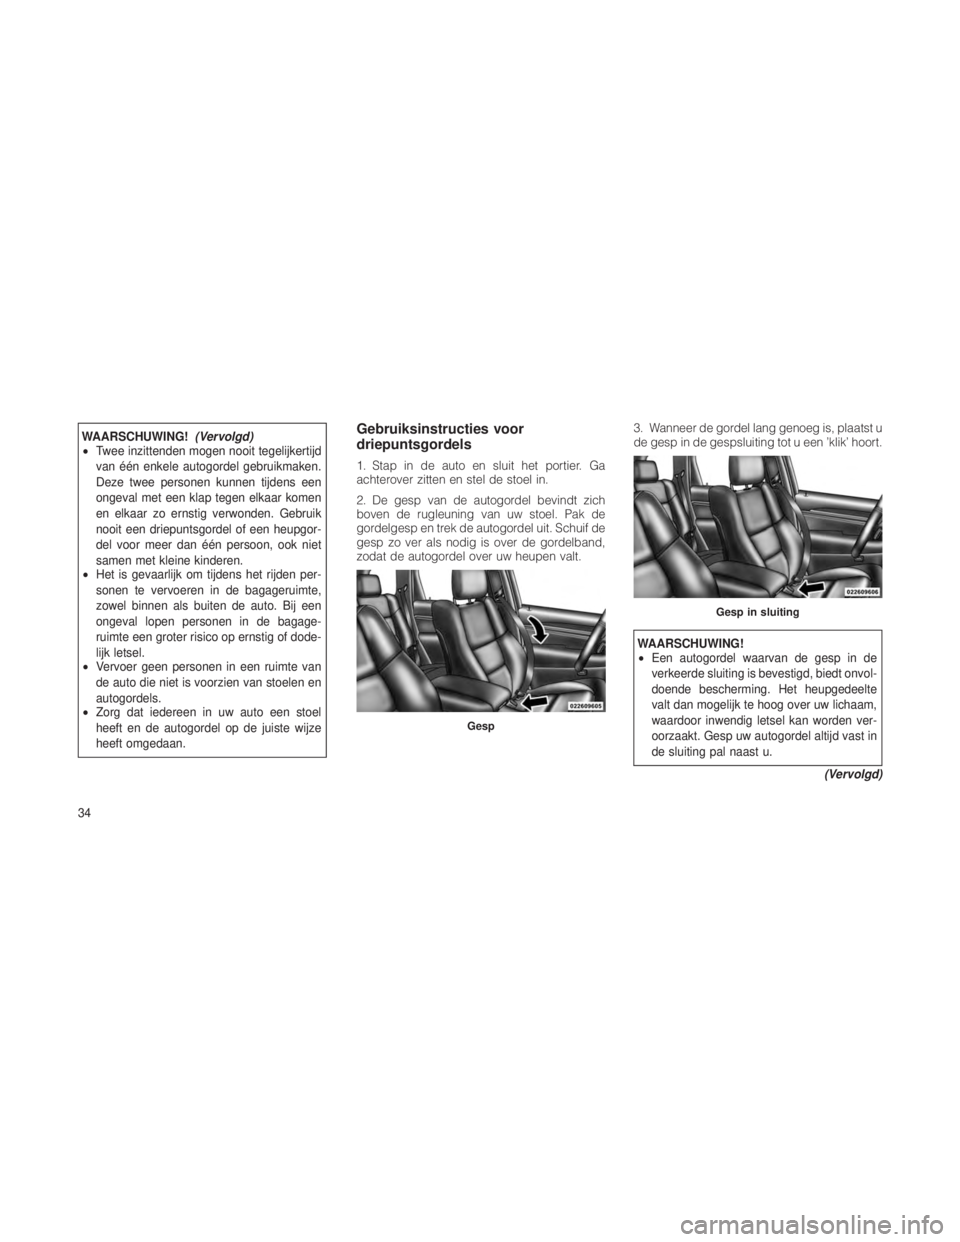 JEEP GRAND CHEROKEE 2012  Instructieboek (in Dutch) WAARSCHUWING!(Vervolgd)
• Twee inzittenden mogen nooit tegelijkertijd
van één enkele autogordel gebruikmaken.
Deze twee personen kunnen tijdens een
ongeval met een klap tegen elkaar komen
en elkaa